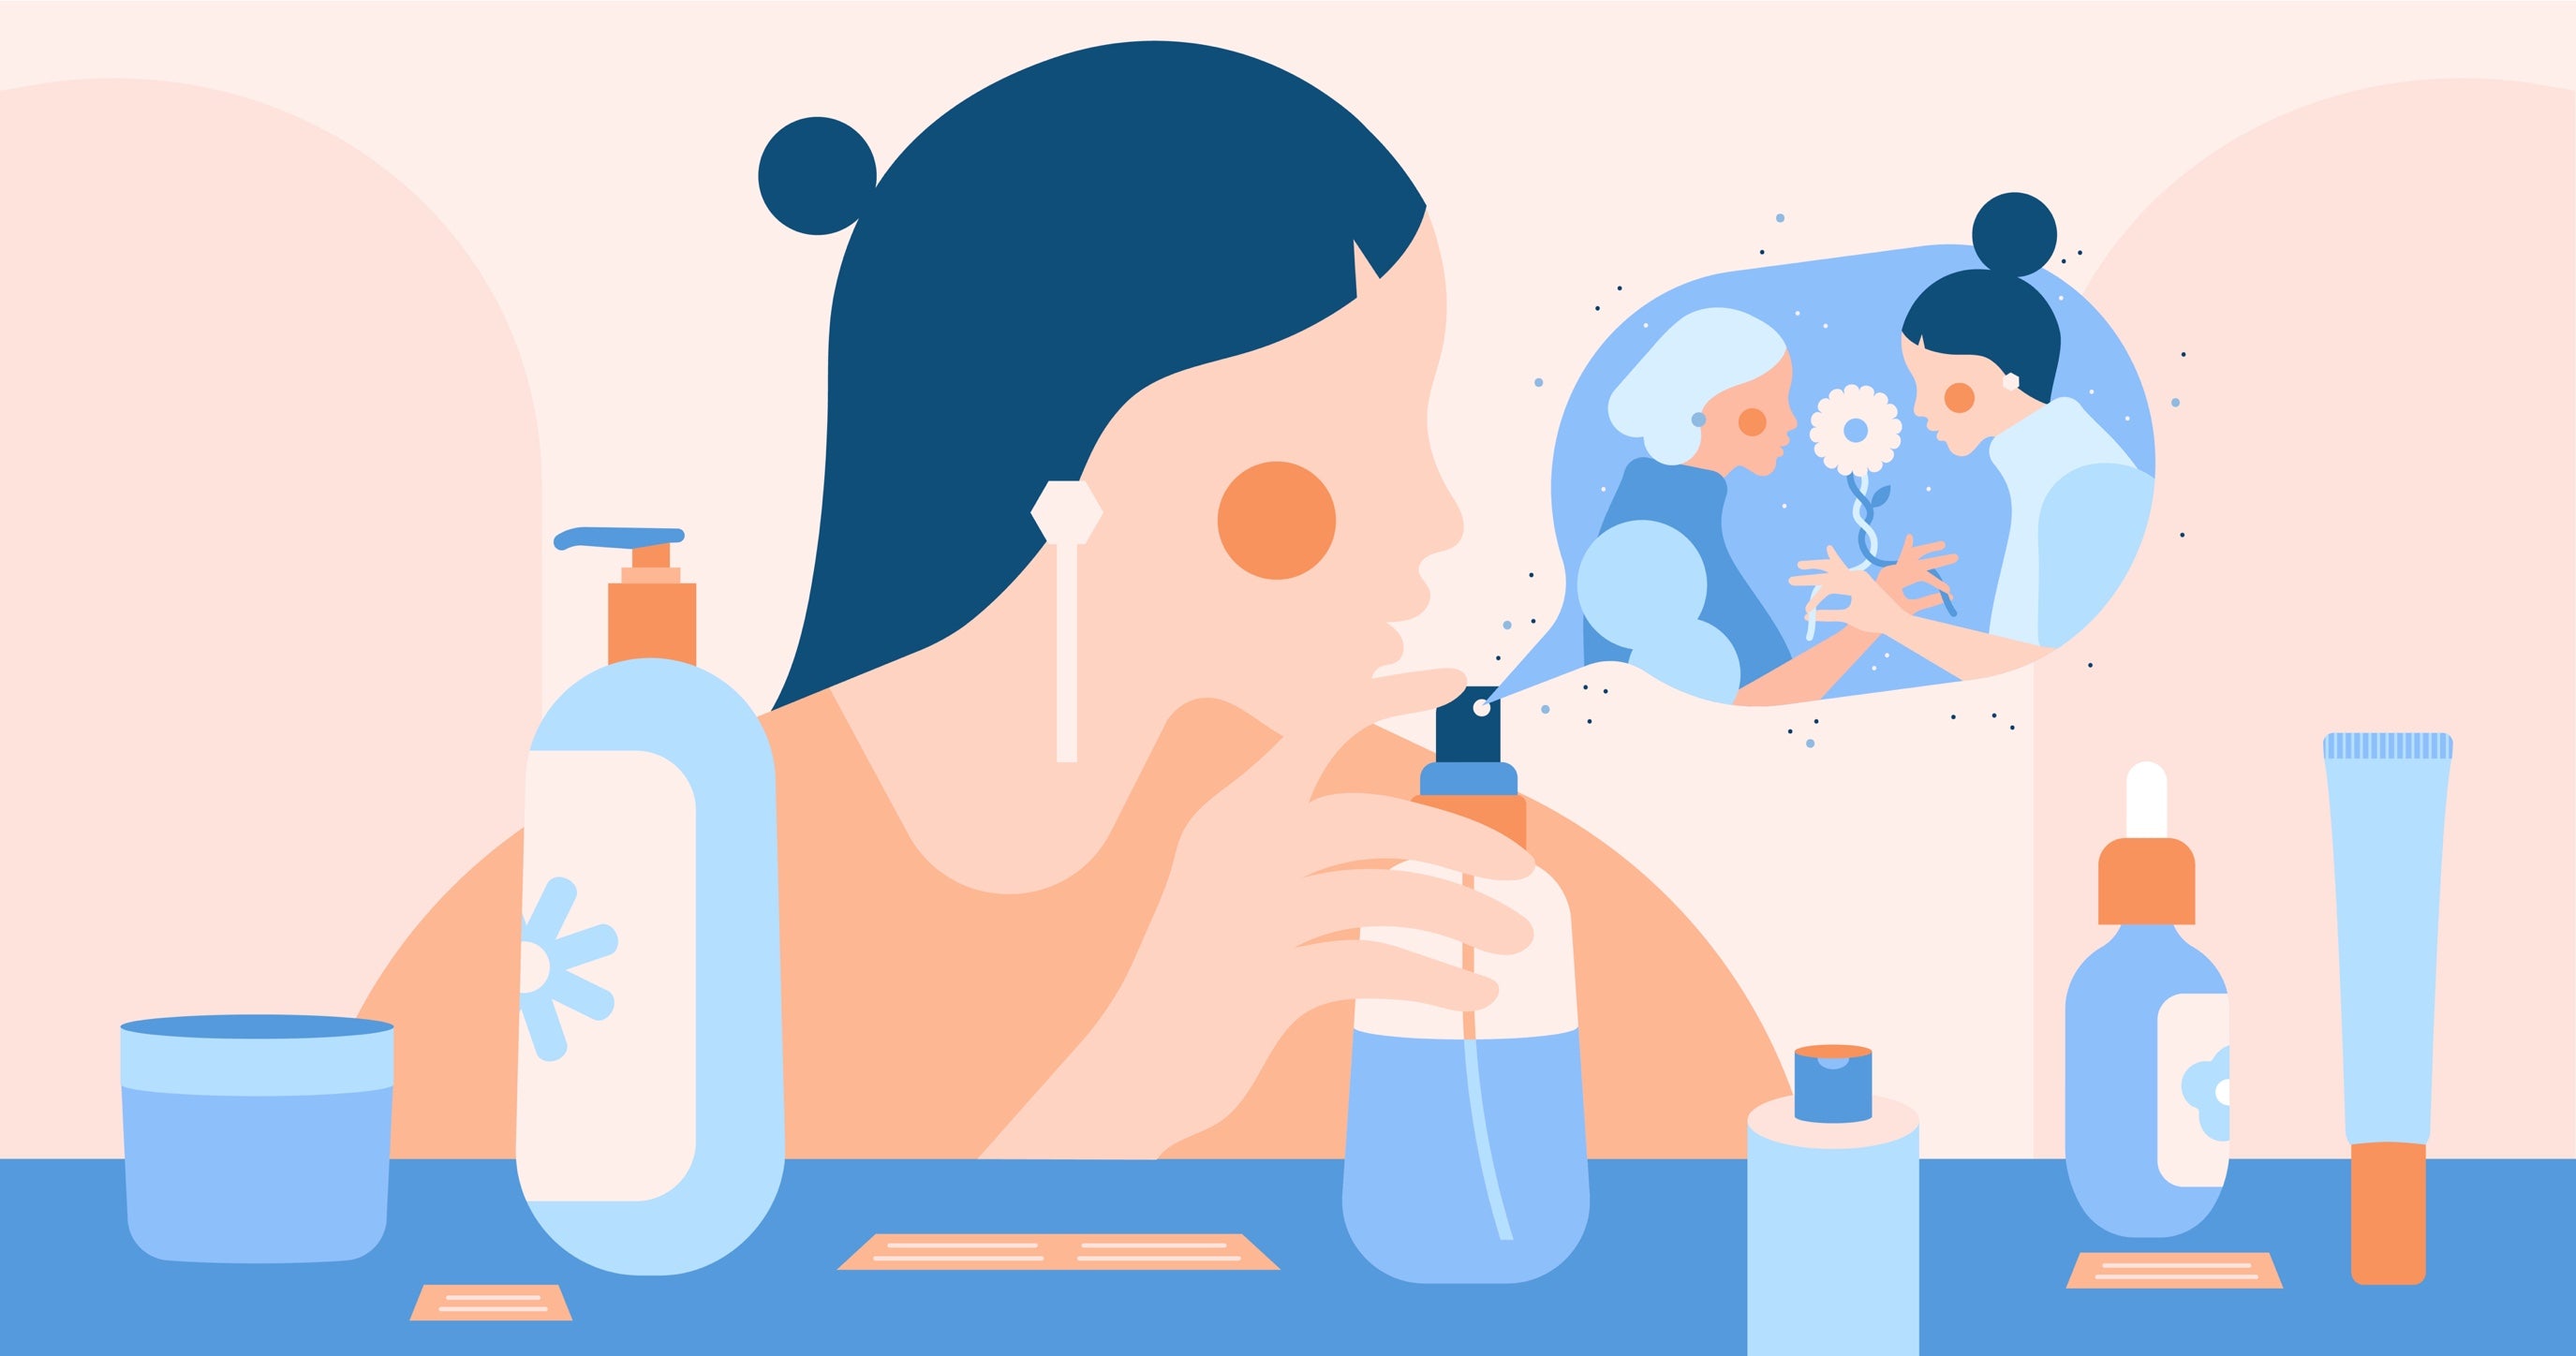 Illustratie van een jonge vrouw die huidverzorgingsproducten uitprobeert terwijl twee figuren met elkaar in gesprek zijn in een wolk van parfum